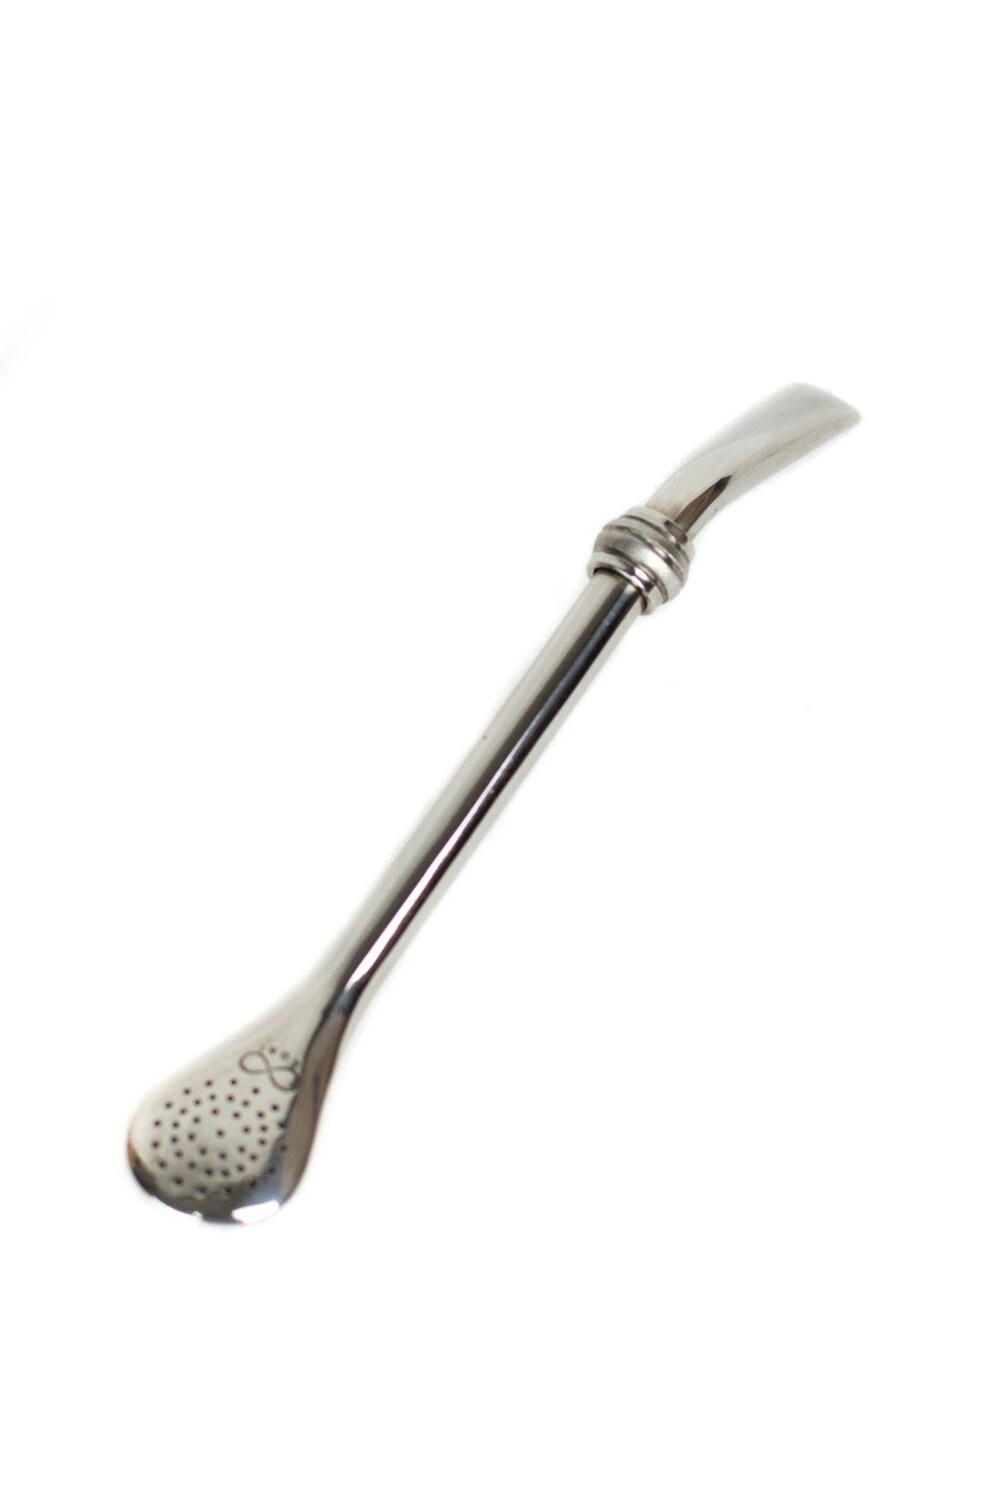 Spoon bombilla stainless steel